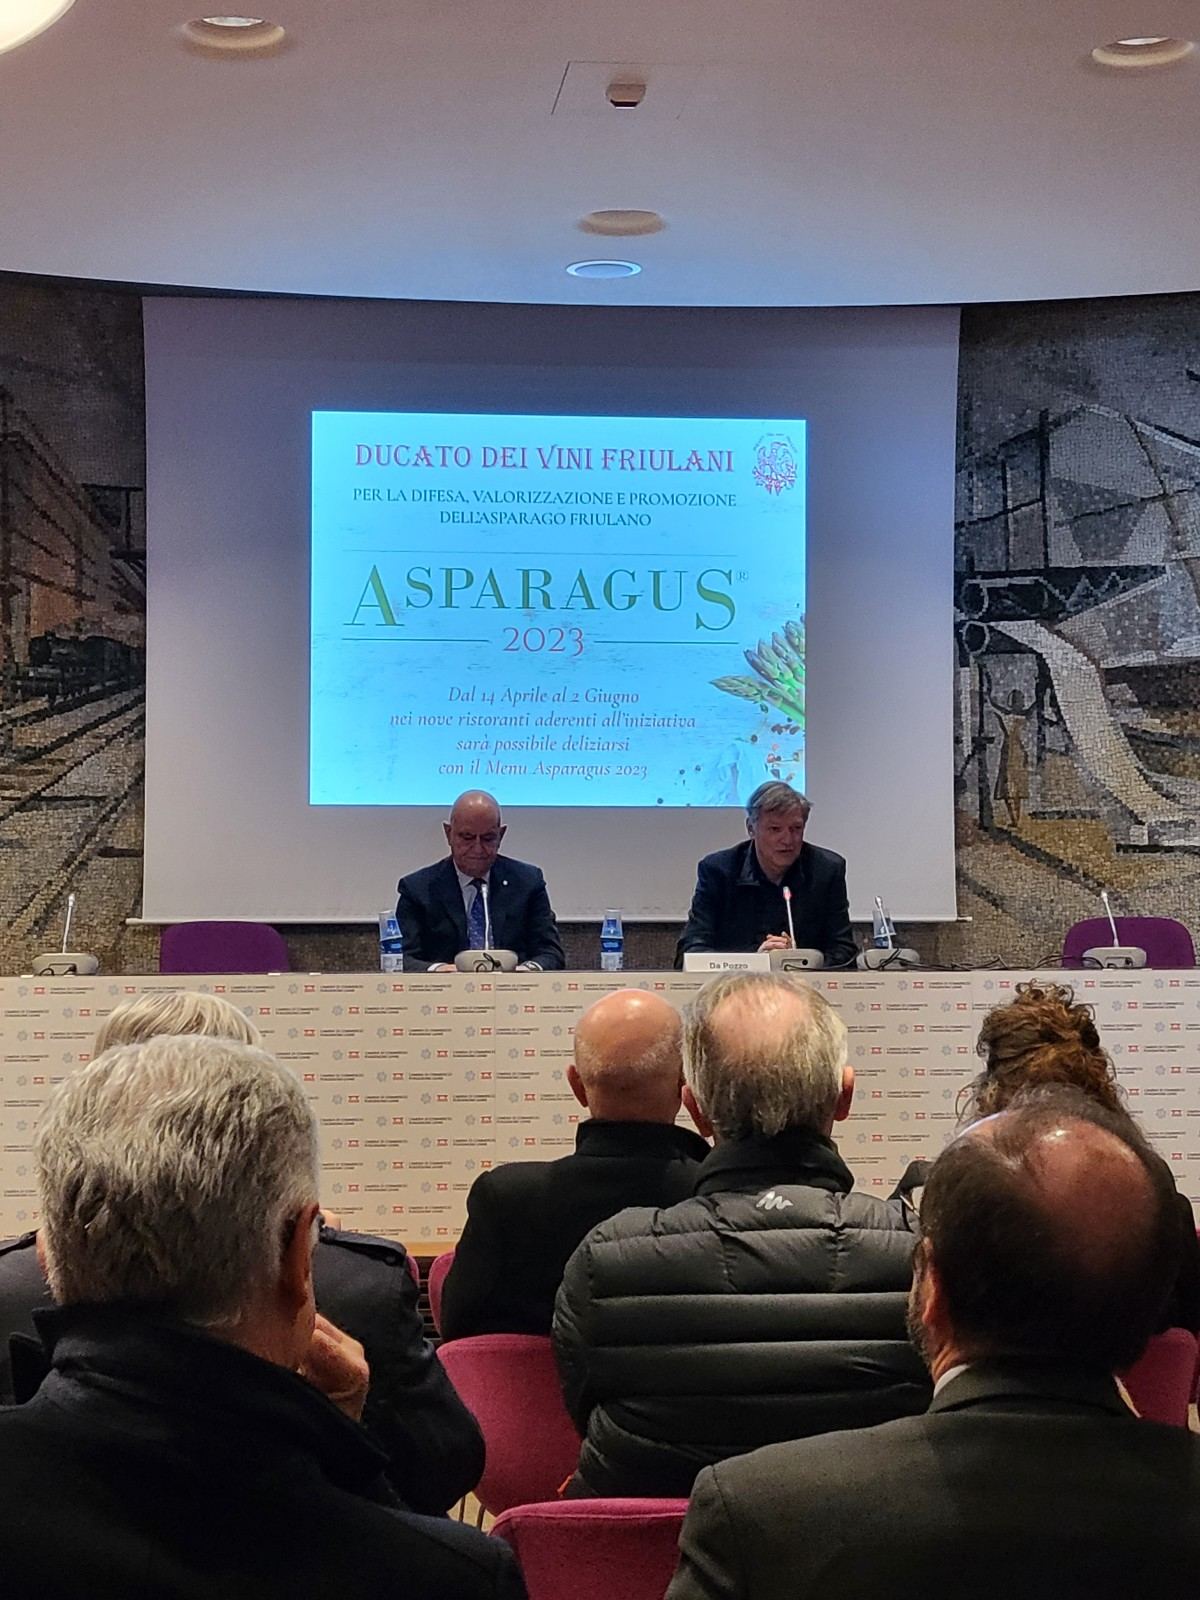 Aspragus 2023 conferenza stampa ducato dei vini friulani